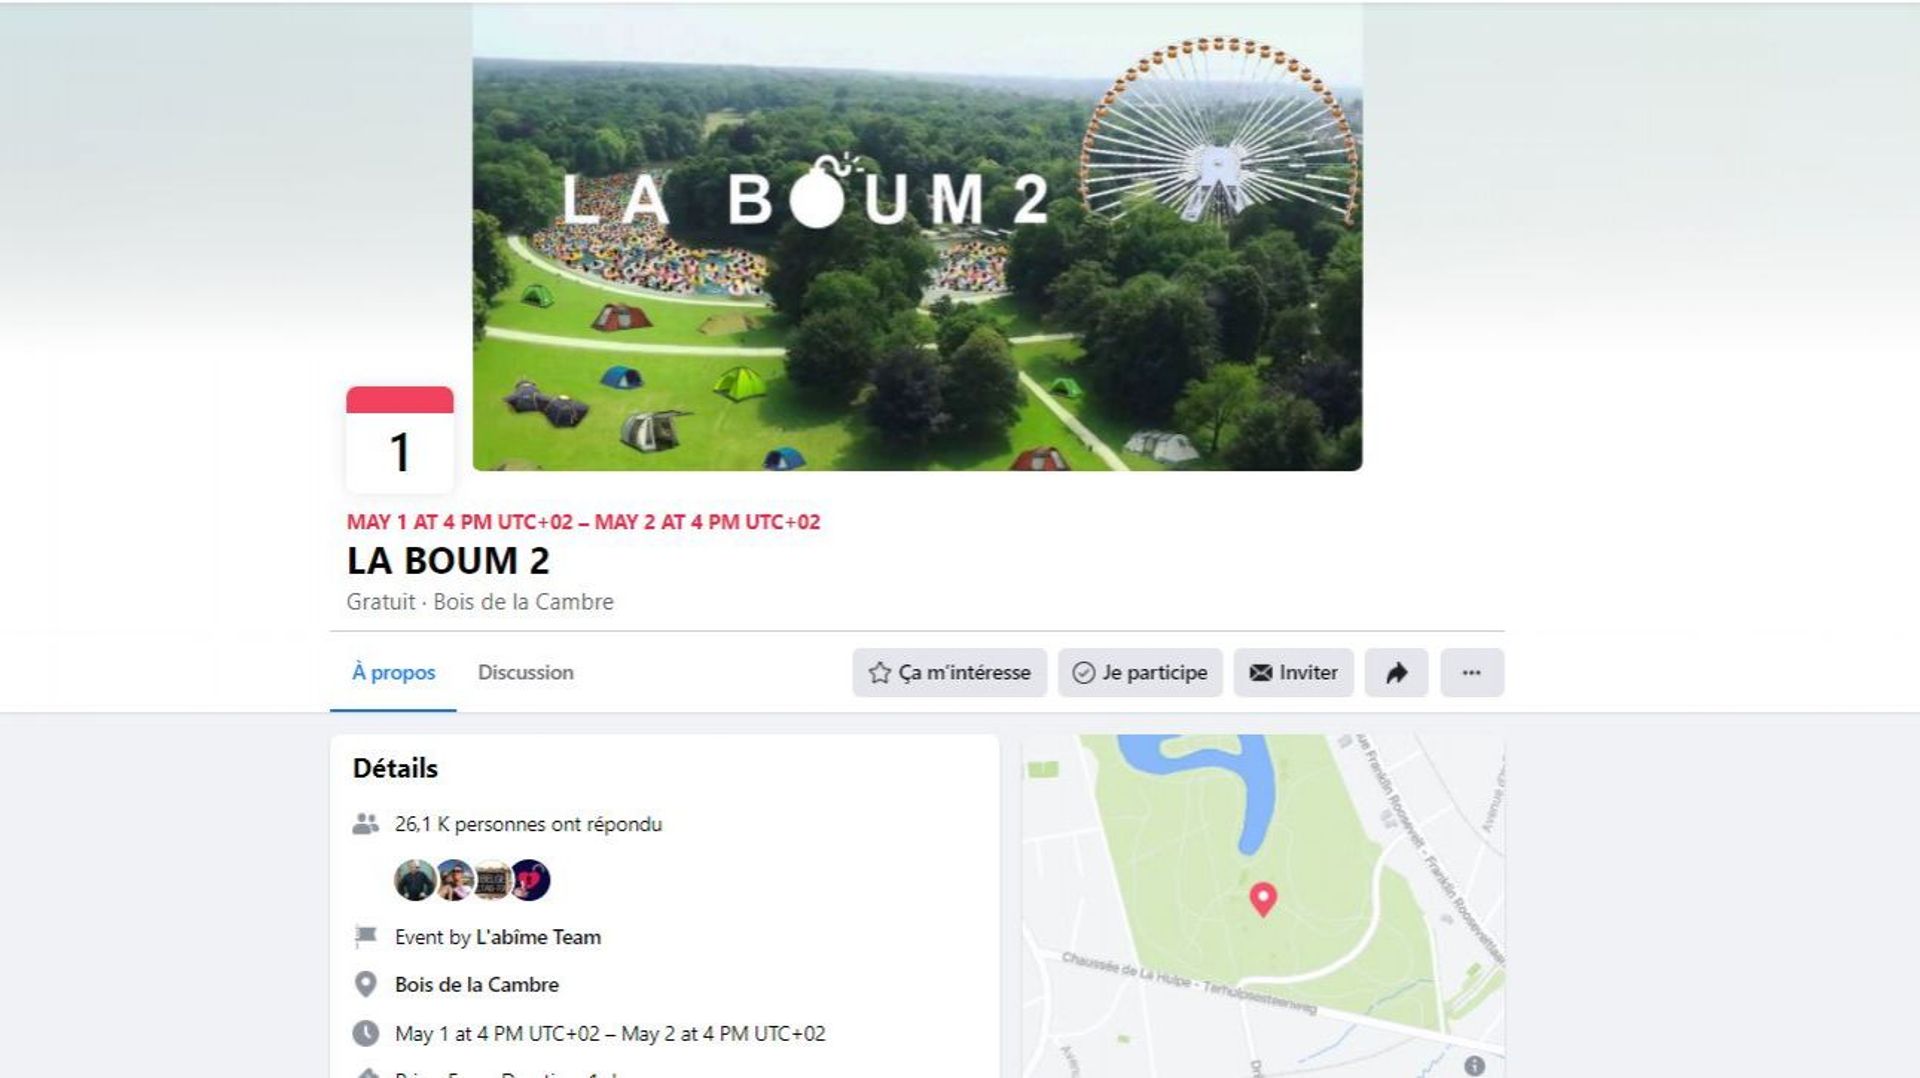 Facebook supprime la page de la "Boum2", d'autres manoeuvres pour freiner la participation affirme l'organisateur